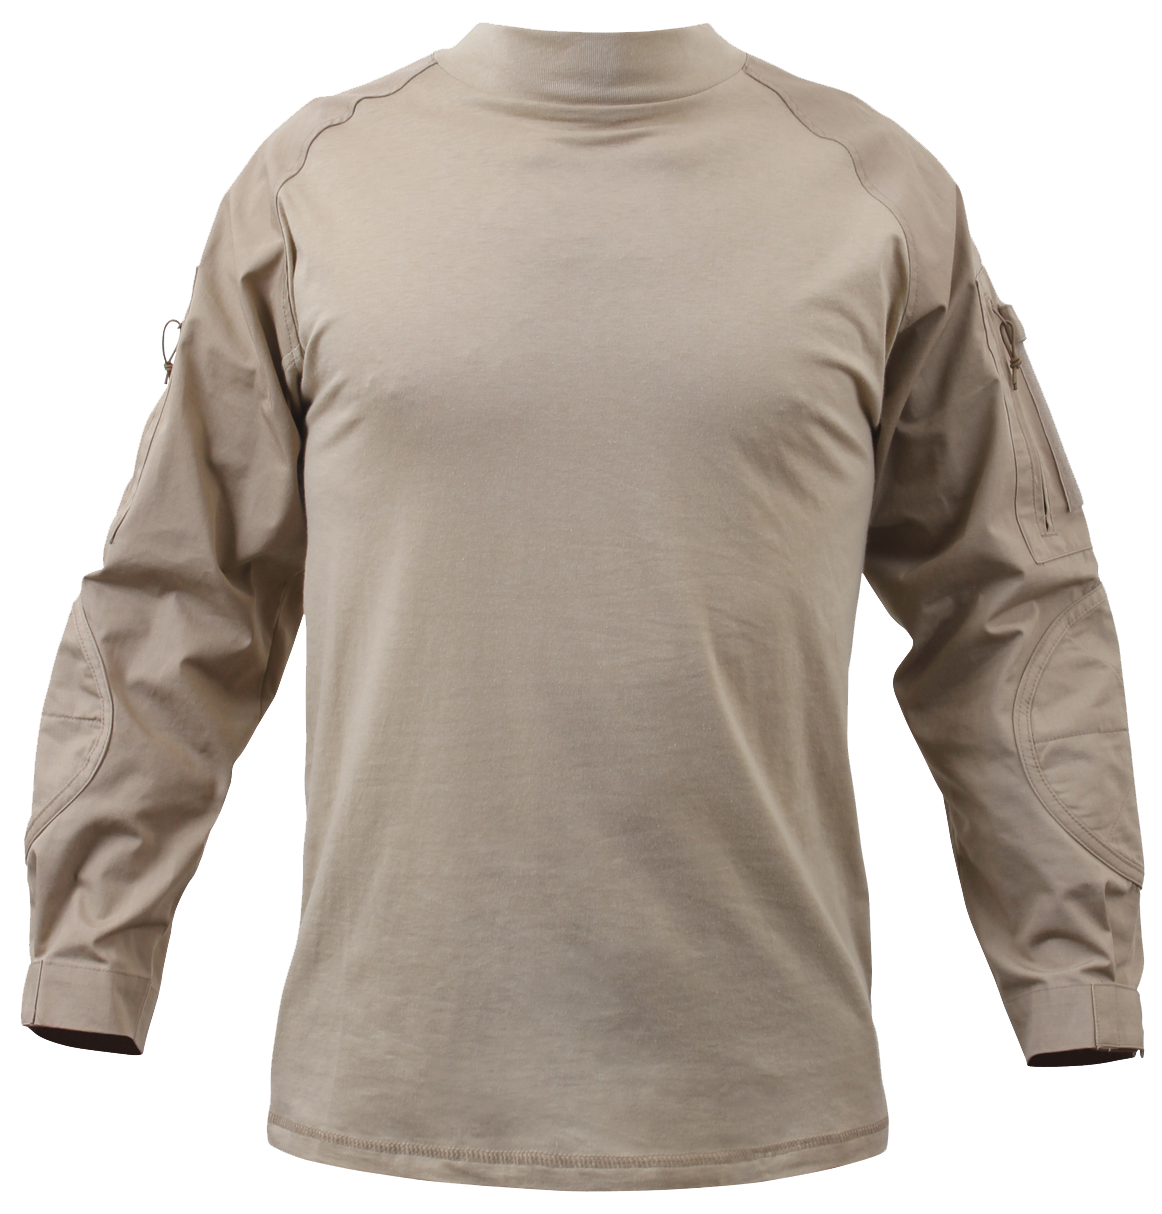 Rothco Desert Sand Combat Shirt (COMBATSHIRT)